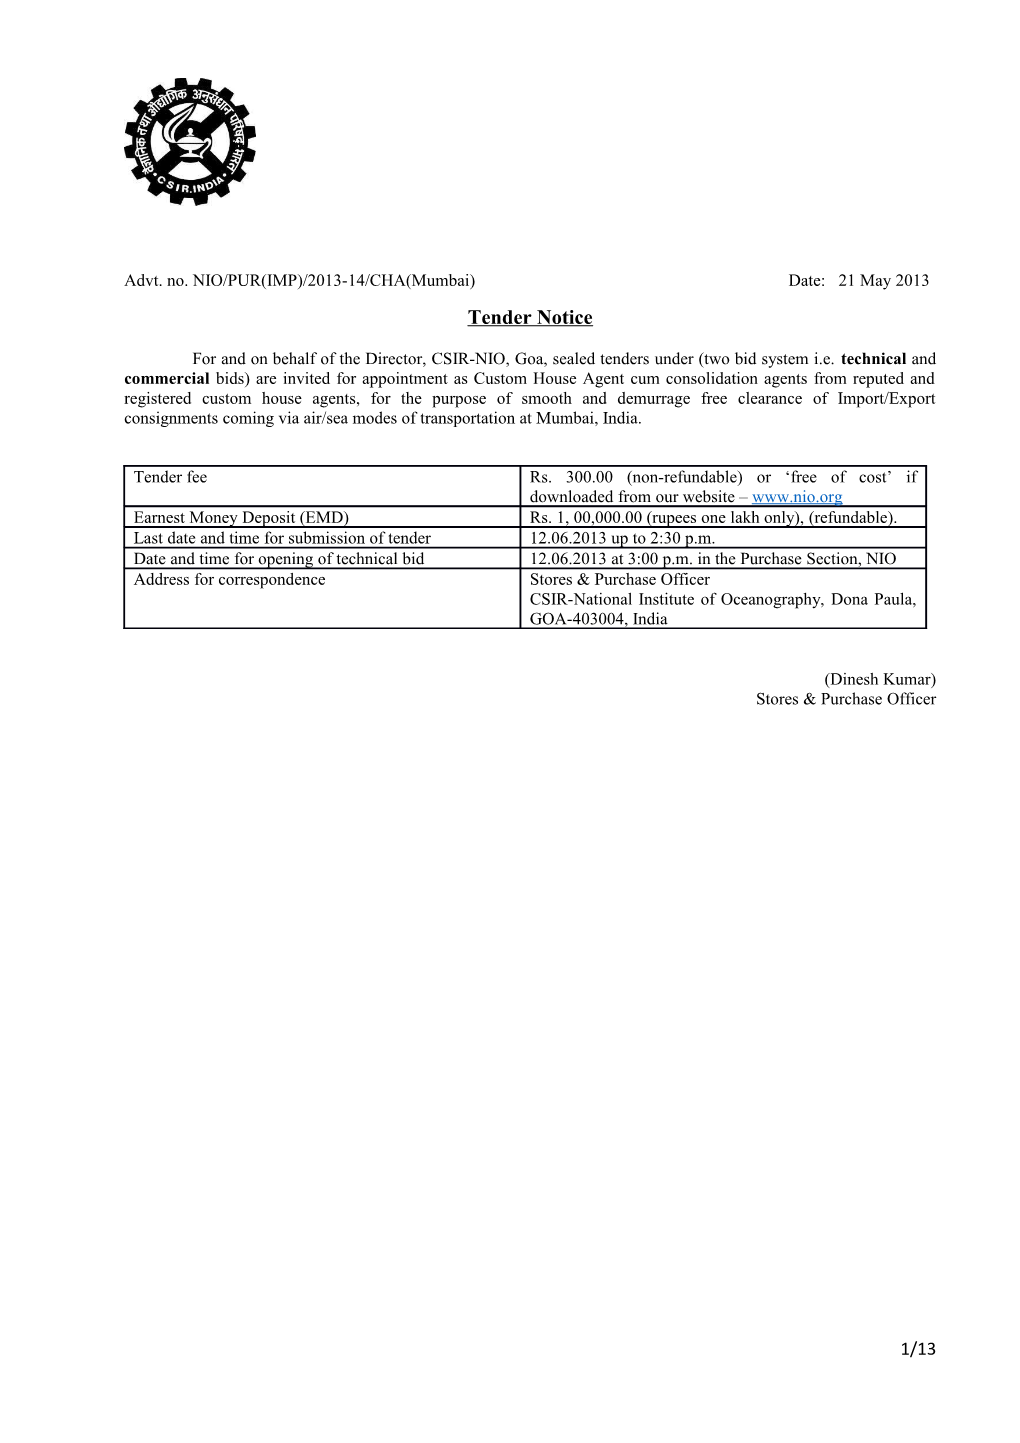 CSIR NIO CHA Mumbai Tender Document